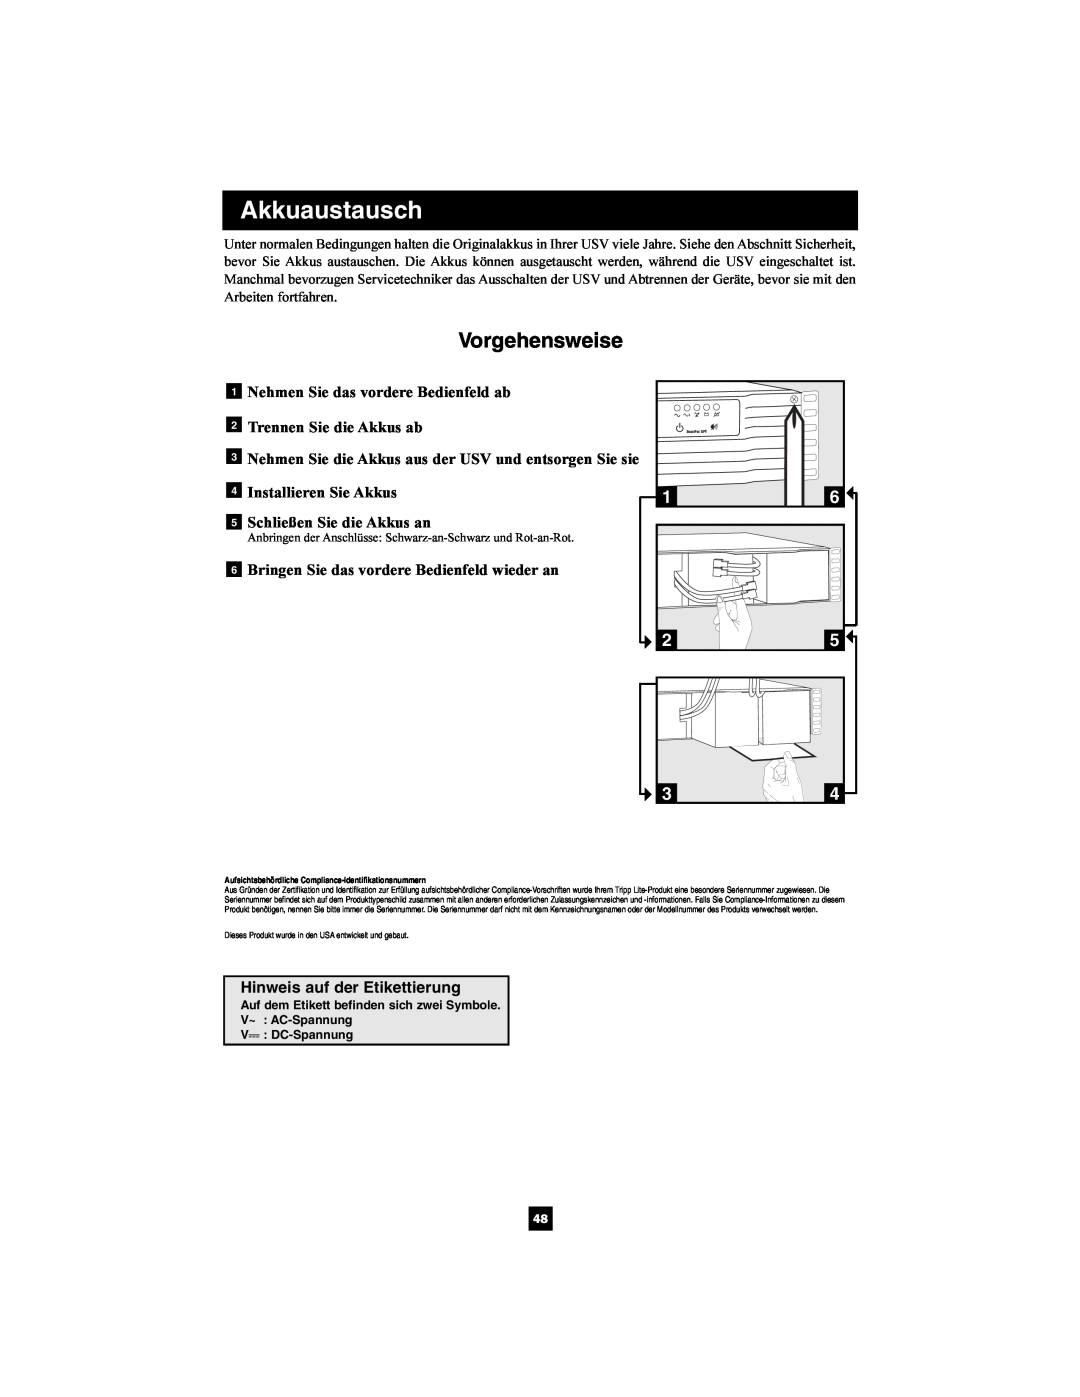 Tripp Lite SMX2200XLRT2U owner manual Akkuaustausch, Vorgehensweise, Hinweis auf der Etikettierung, V DC-Spannung 